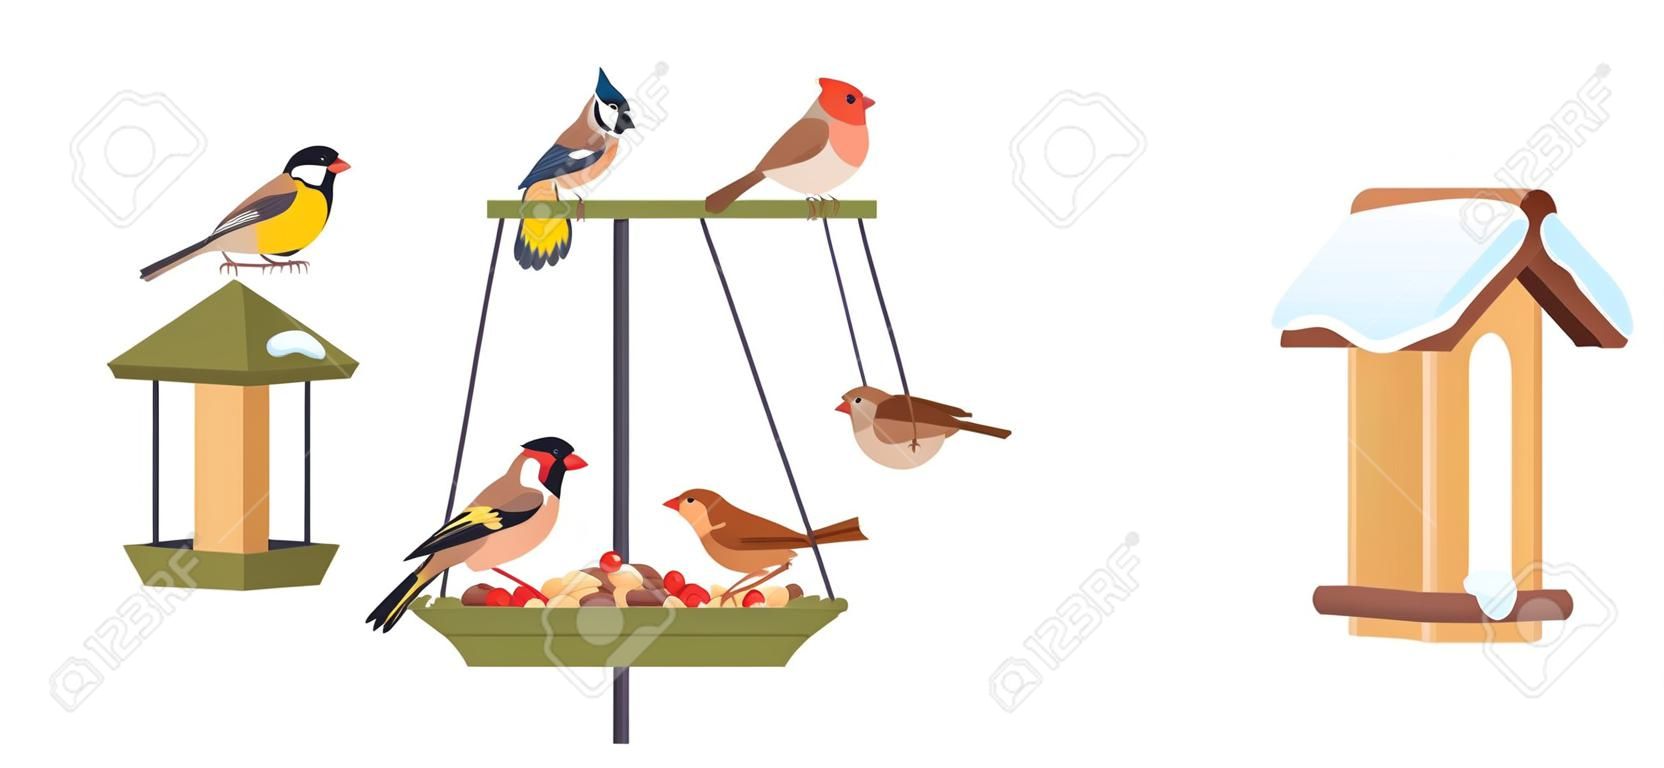 Karmnik dla ptaków zimowa karma dla ptaków karmienie lasów kardynał sikora ogród wiszący podwórkowy domek dla ptaków z nasionami dzika przyroda budowa plakat wektor ilustracja